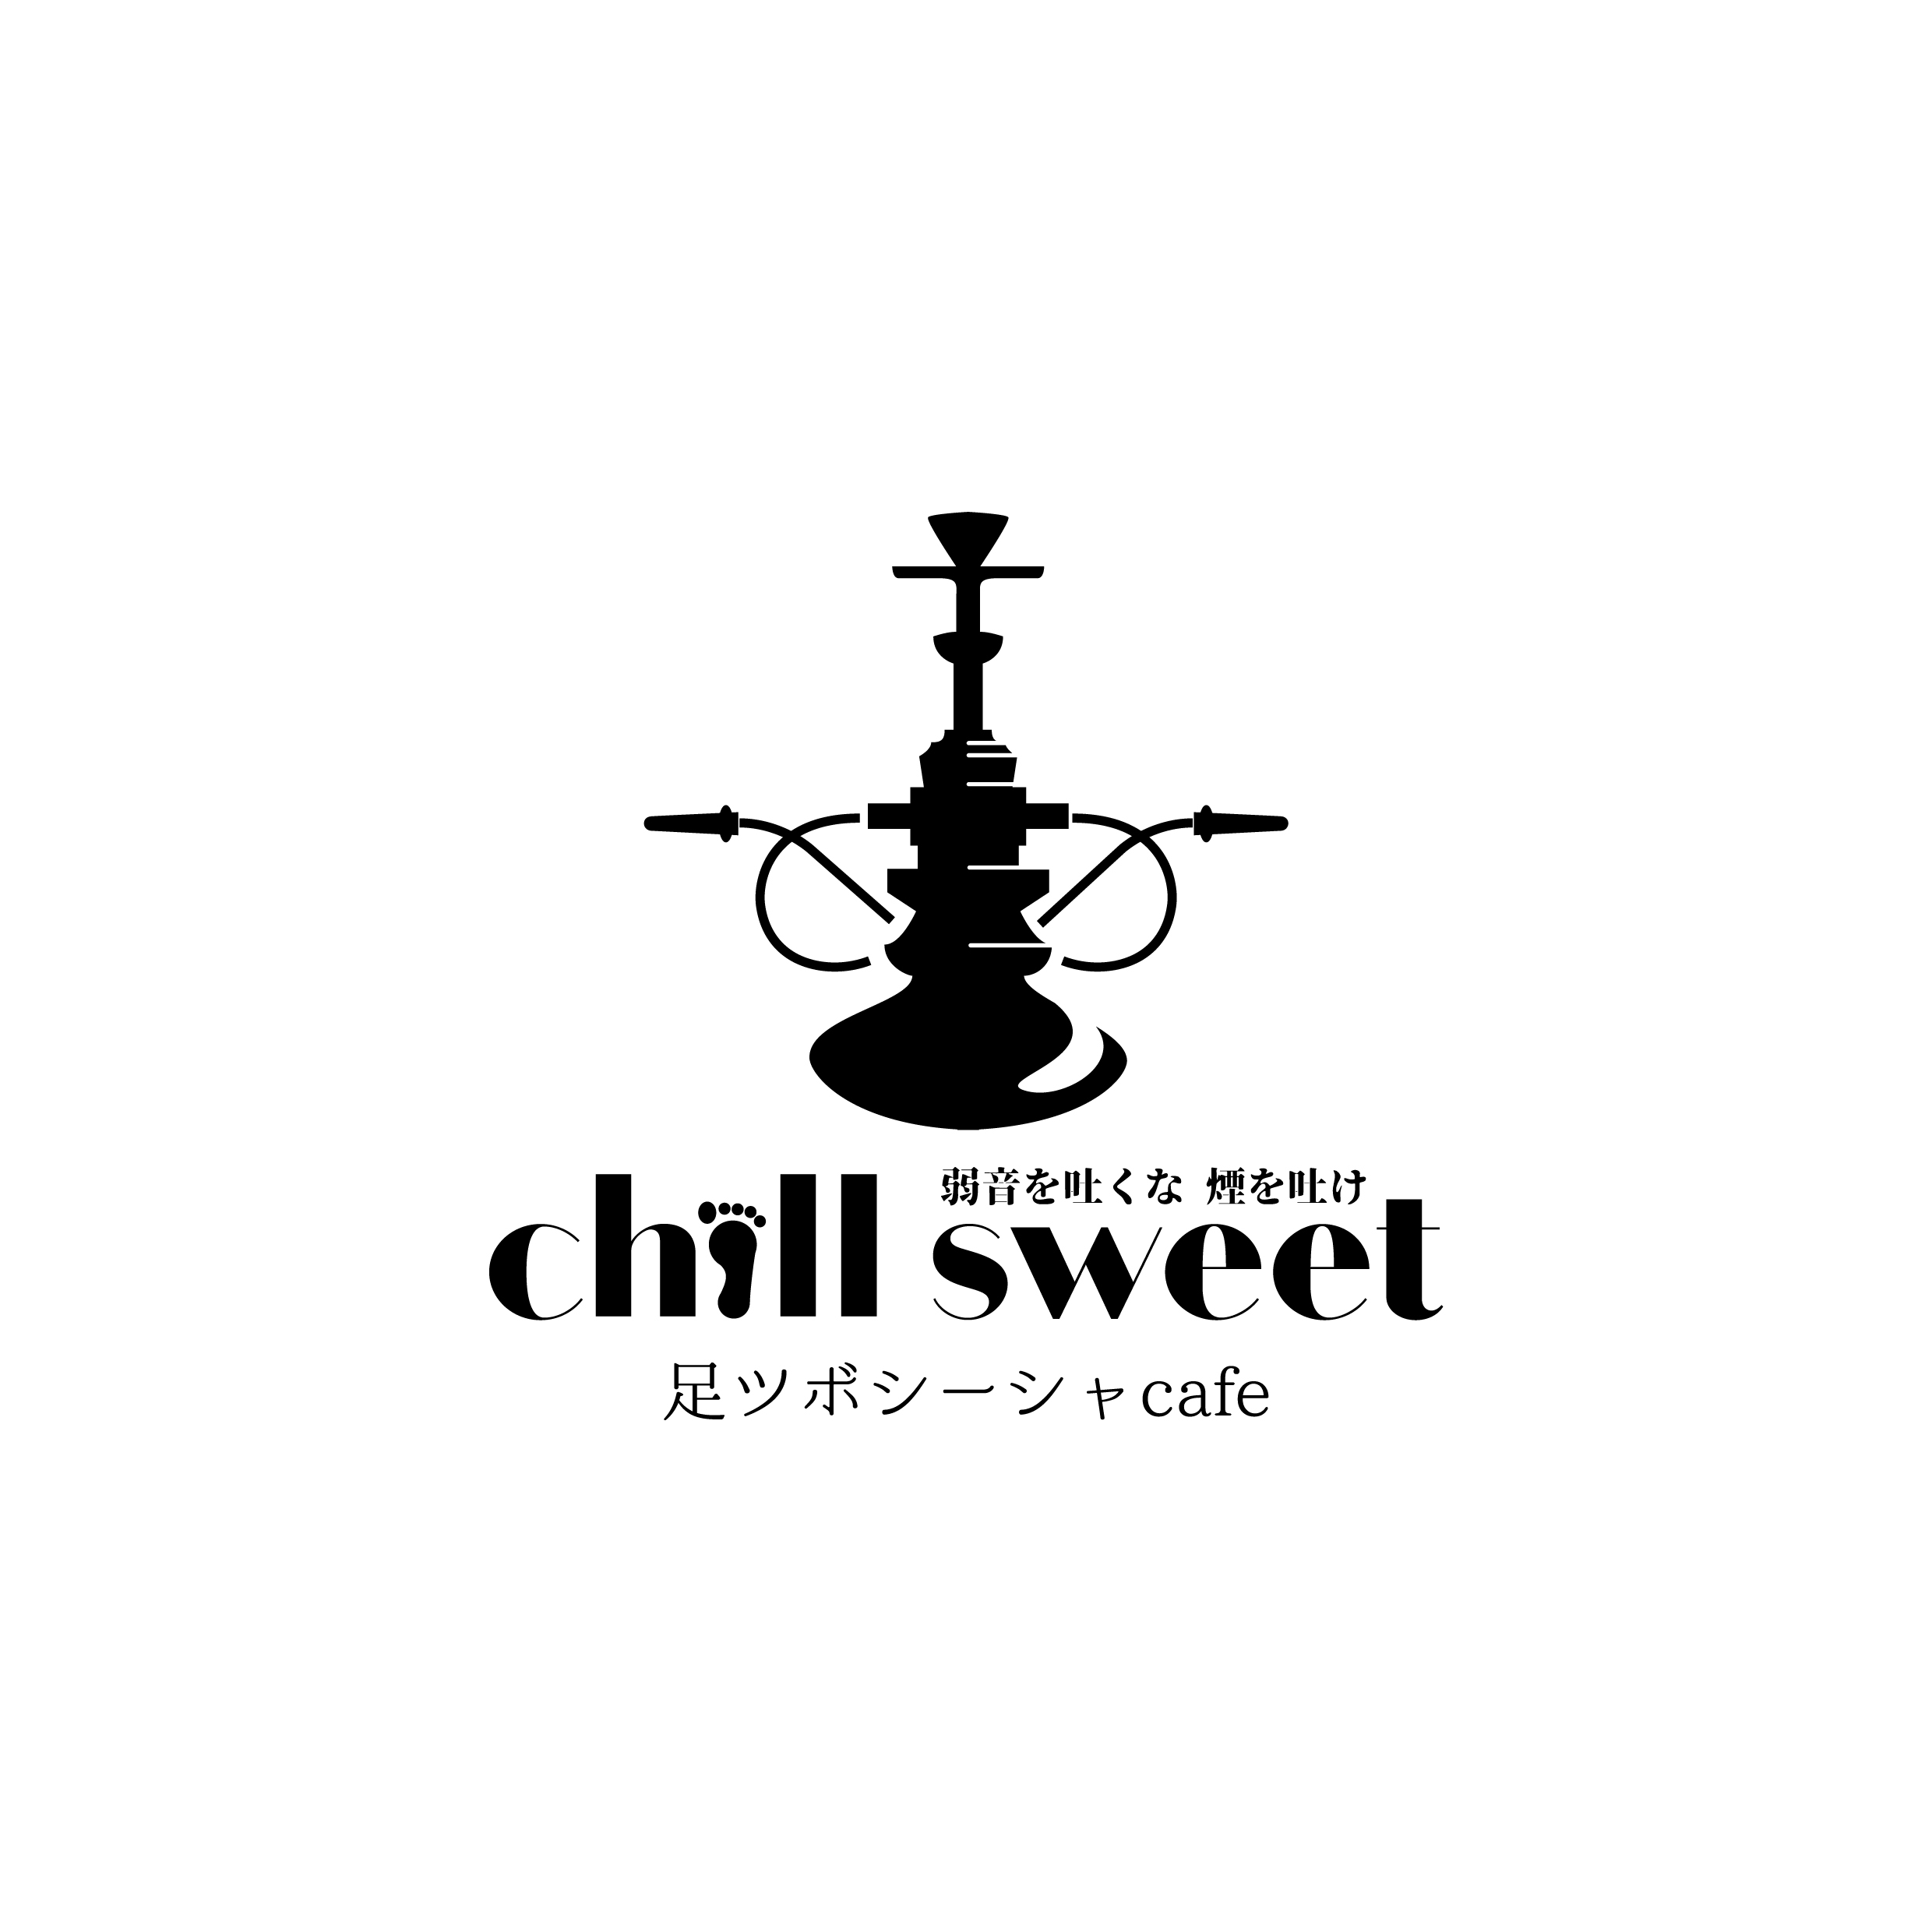 シーシャ 足ツボ 極上チルタイムを過ごせるカフェ Chill Sweet チルスウィート の新店舗を六本木にオープン 株式会社c Lifeのプレスリリース